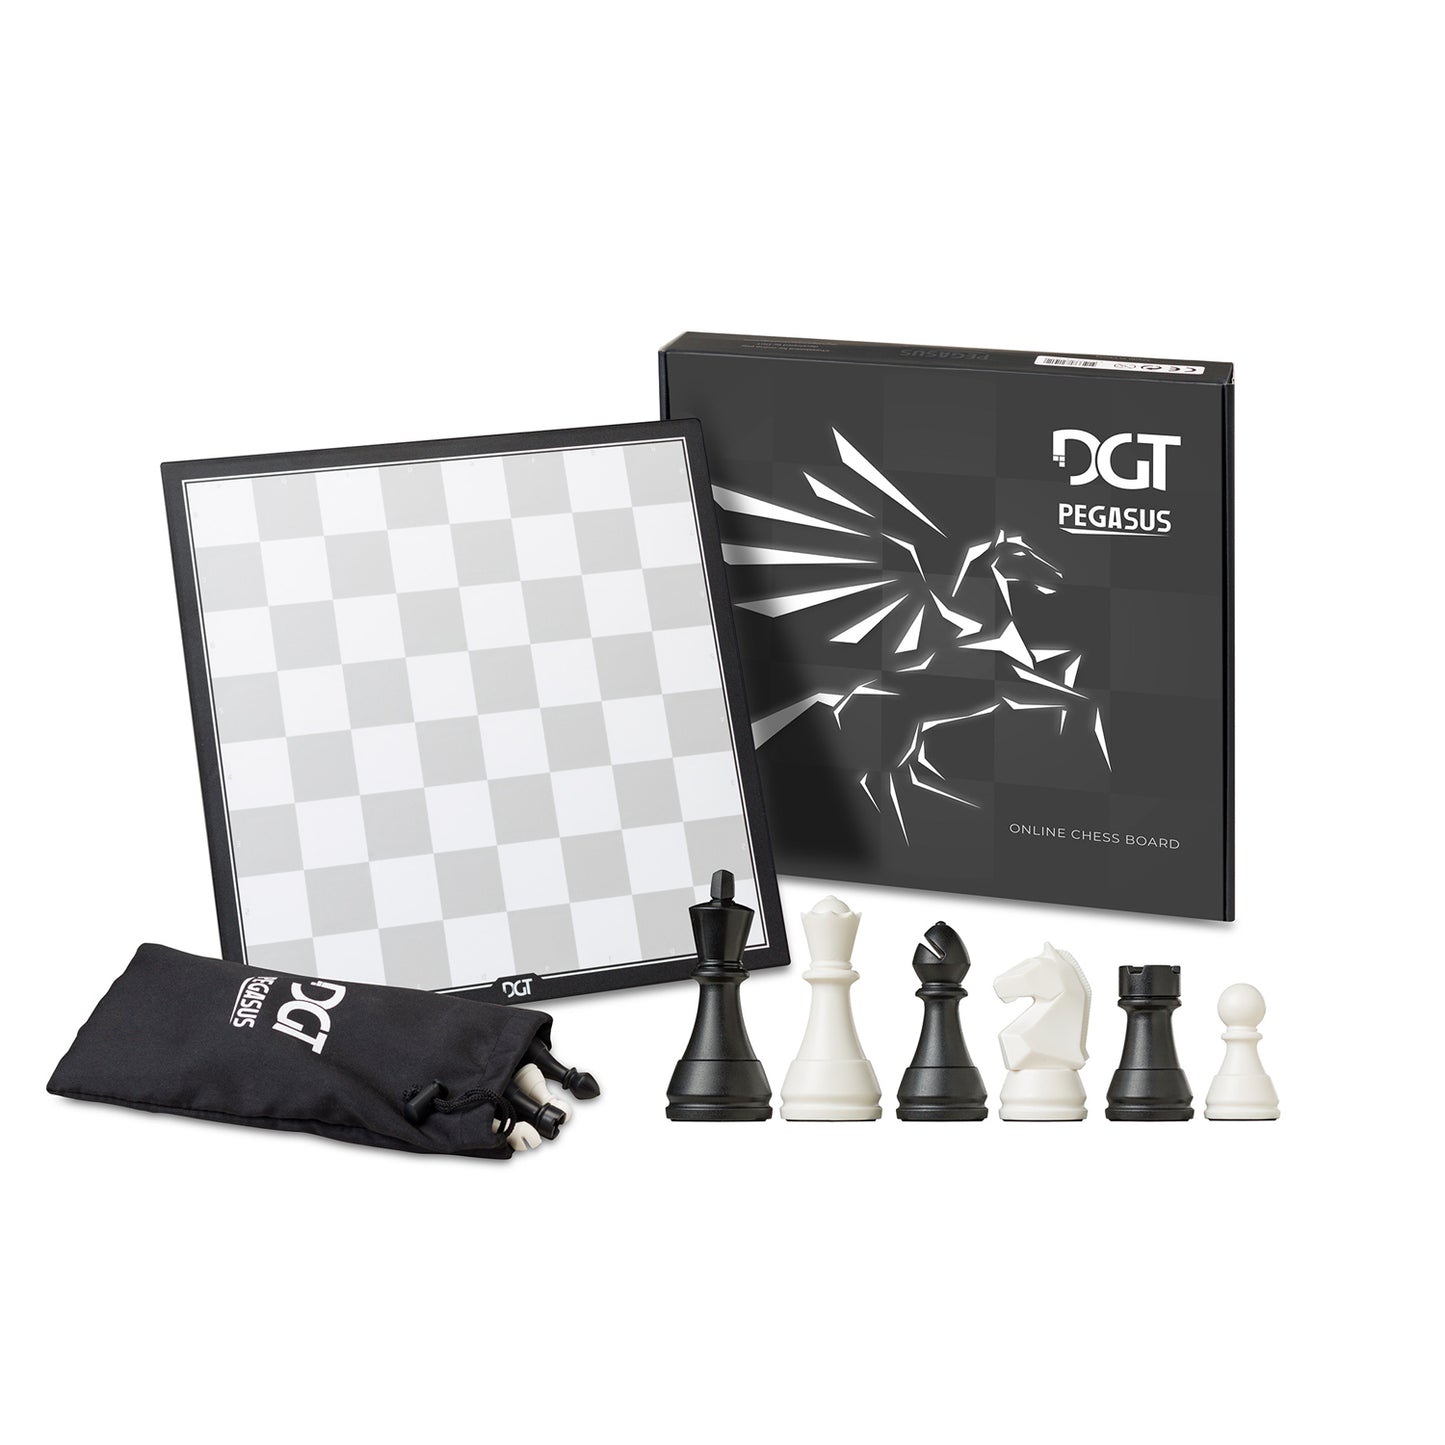 DGT Pegasus Chess Board & Pieces (A-Grade)